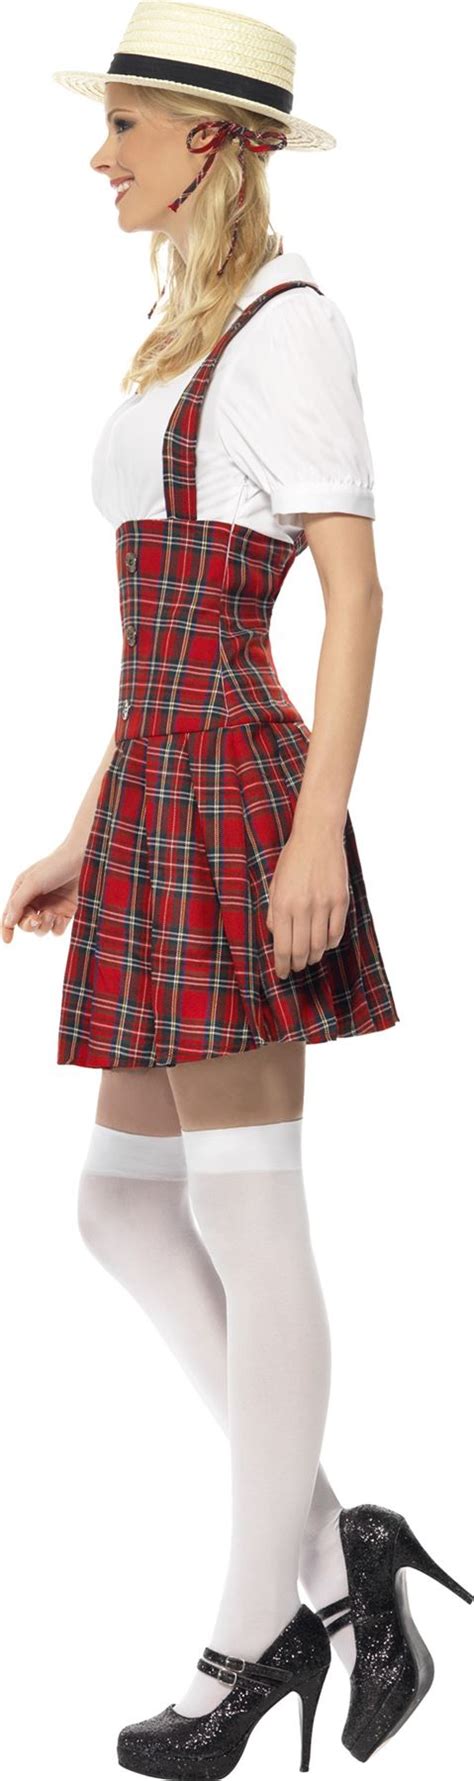 Ladies Sexy Schoolgirl Fancy Dress Costume Tartan School Girl Uniform